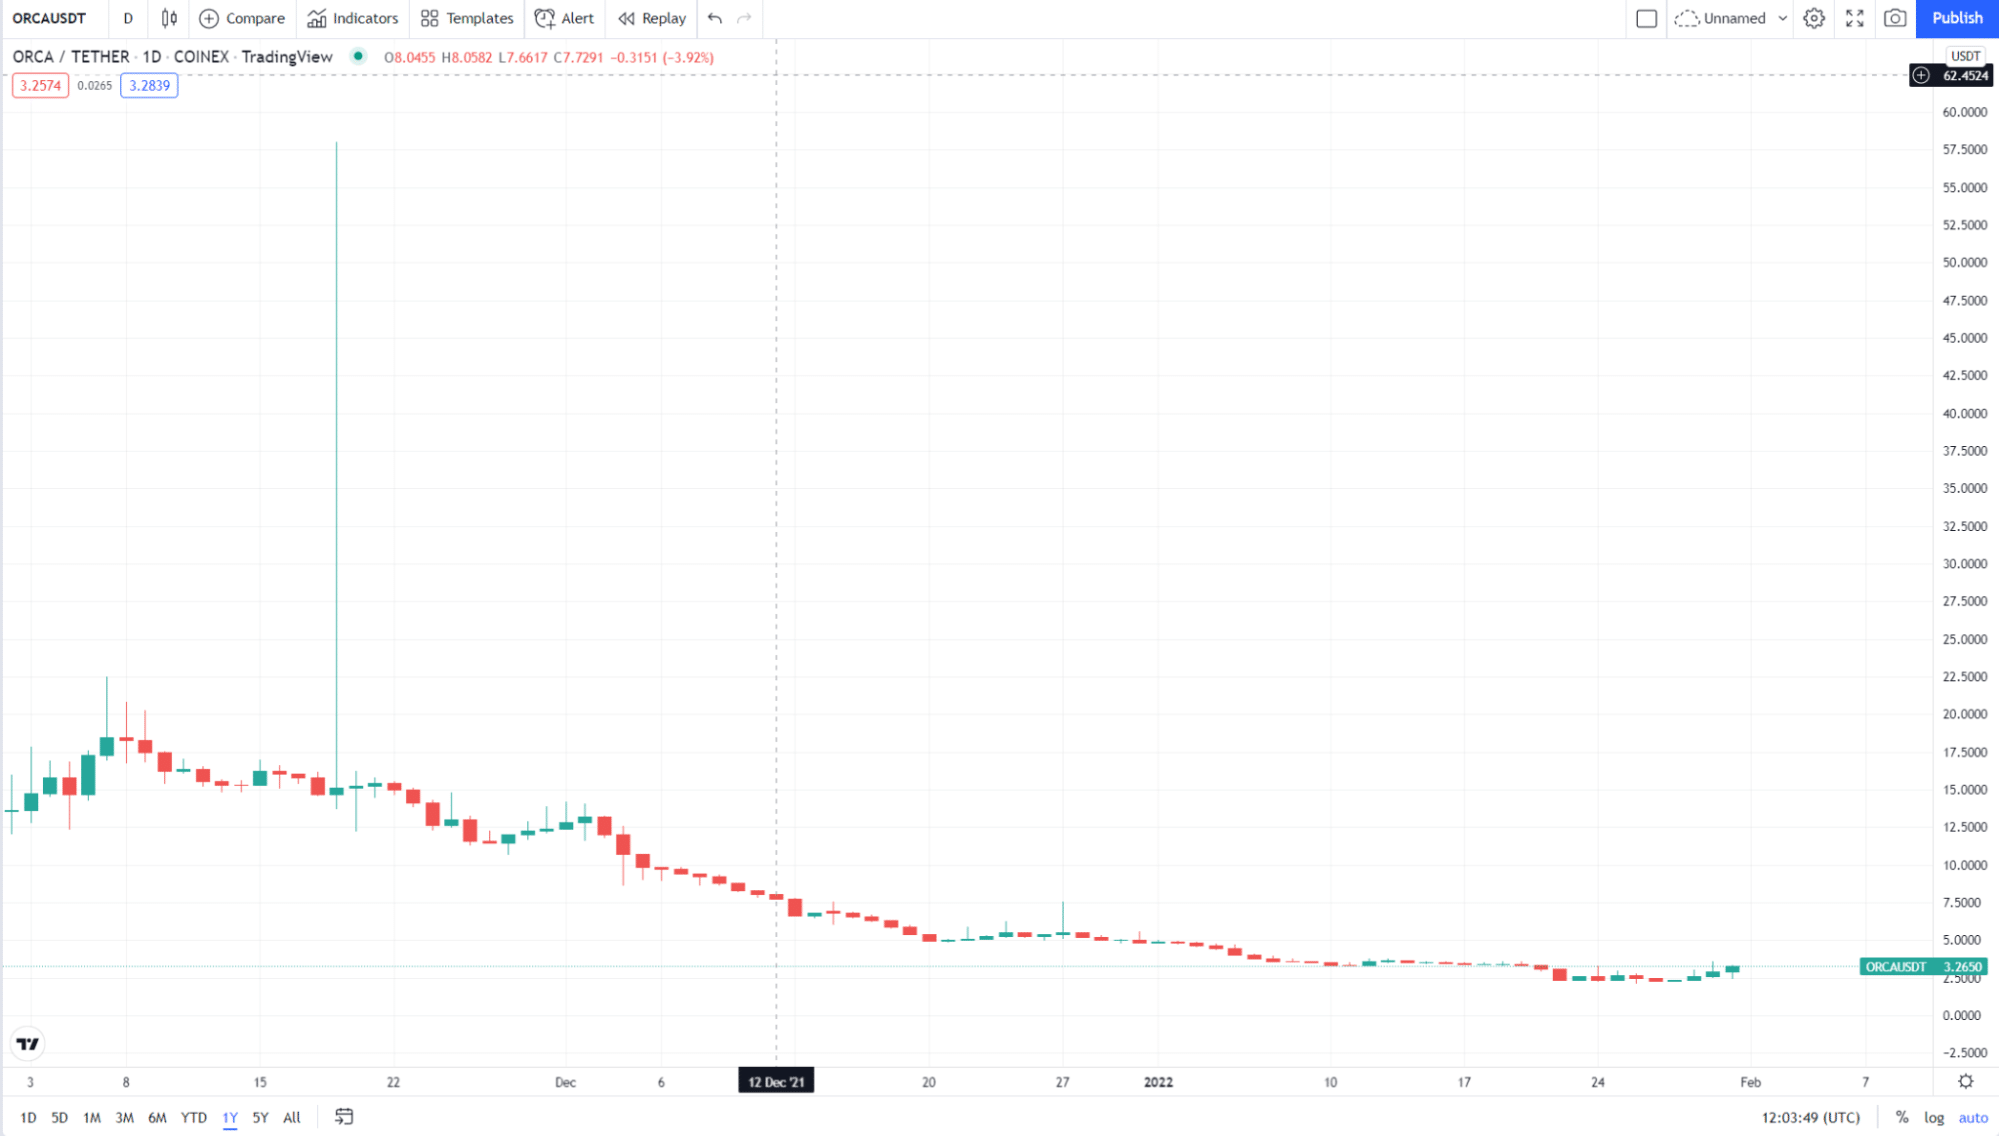 ORCA/USDT 1Y price chart